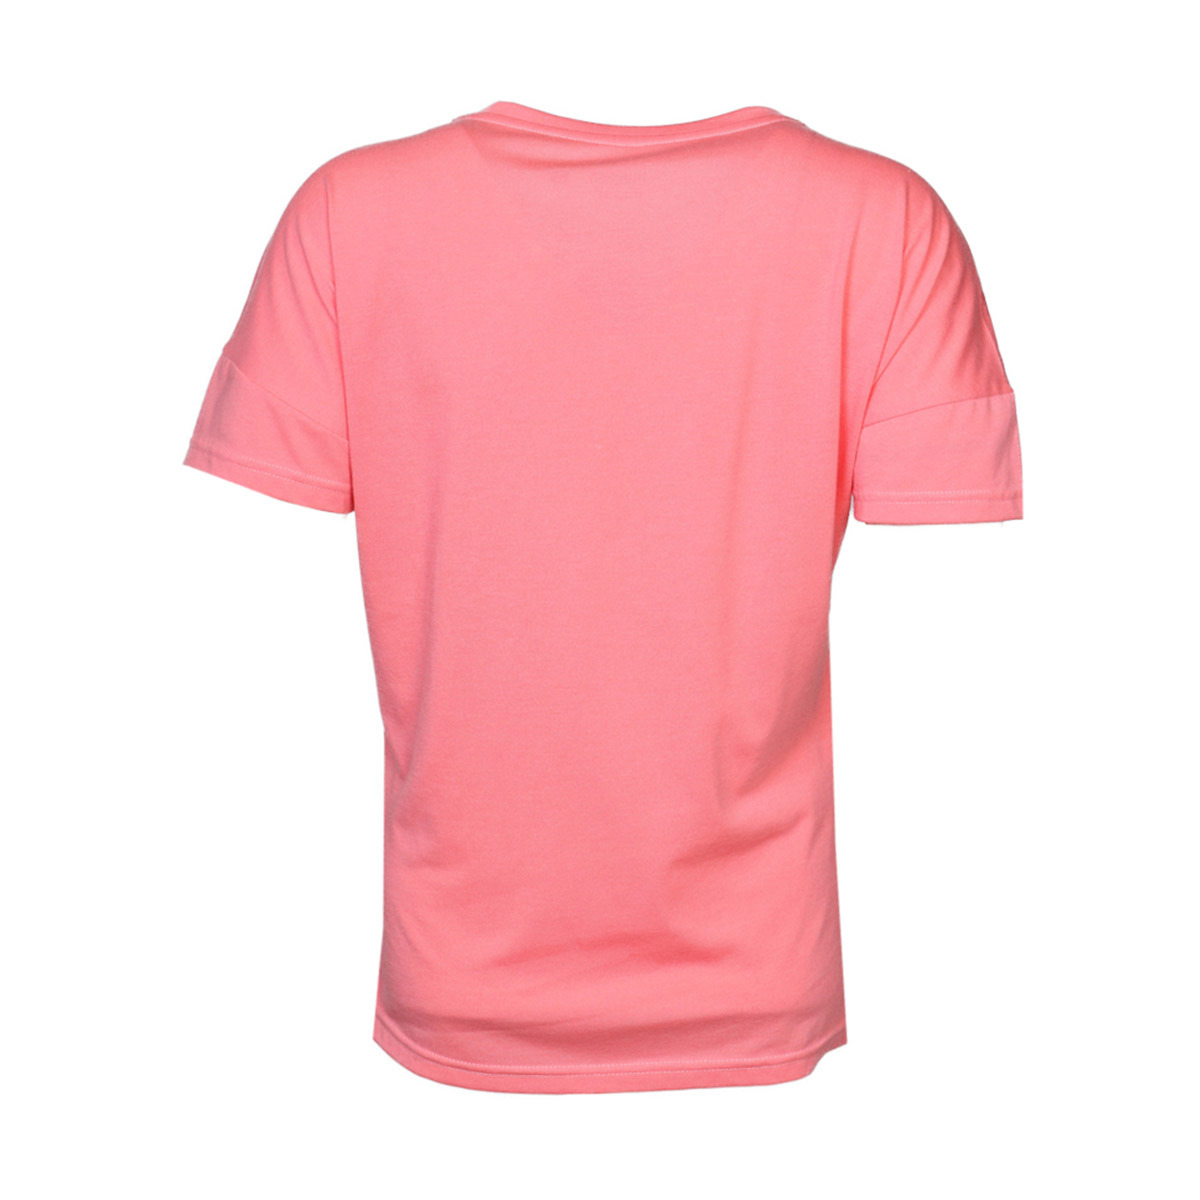 Flo HMLFERIN  T-SHIRT S/S Çok Renkli Kadın Kısa Kol Tişört. 3